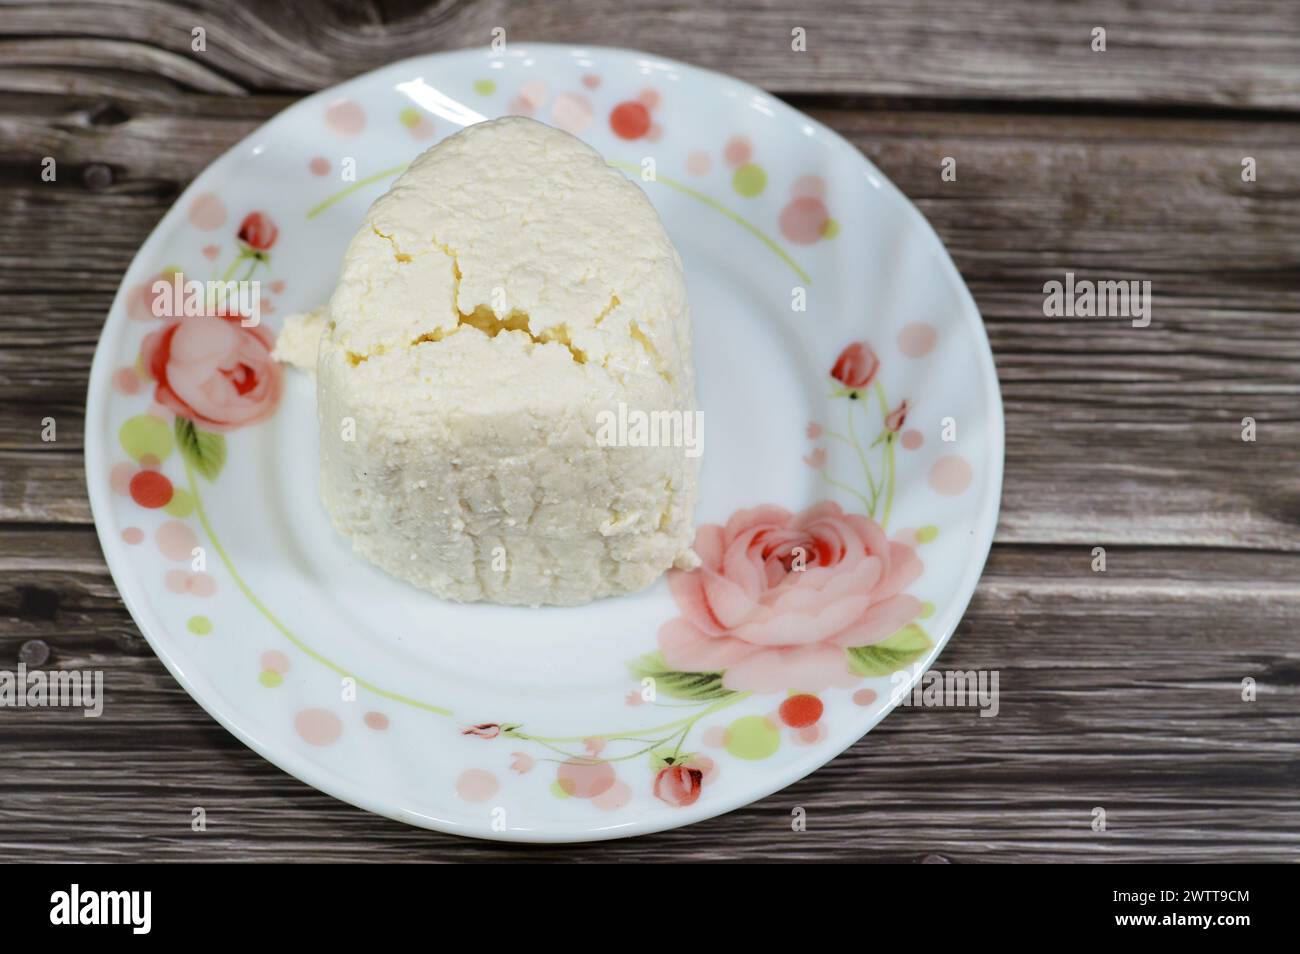 Arish Qarish fromage blanc égyptien, type de fromage blanc, mou, lactique fabriqué à partir de laban rayeb qui est un type de lait écrémé caillé et fermenté fait i Banque D'Images